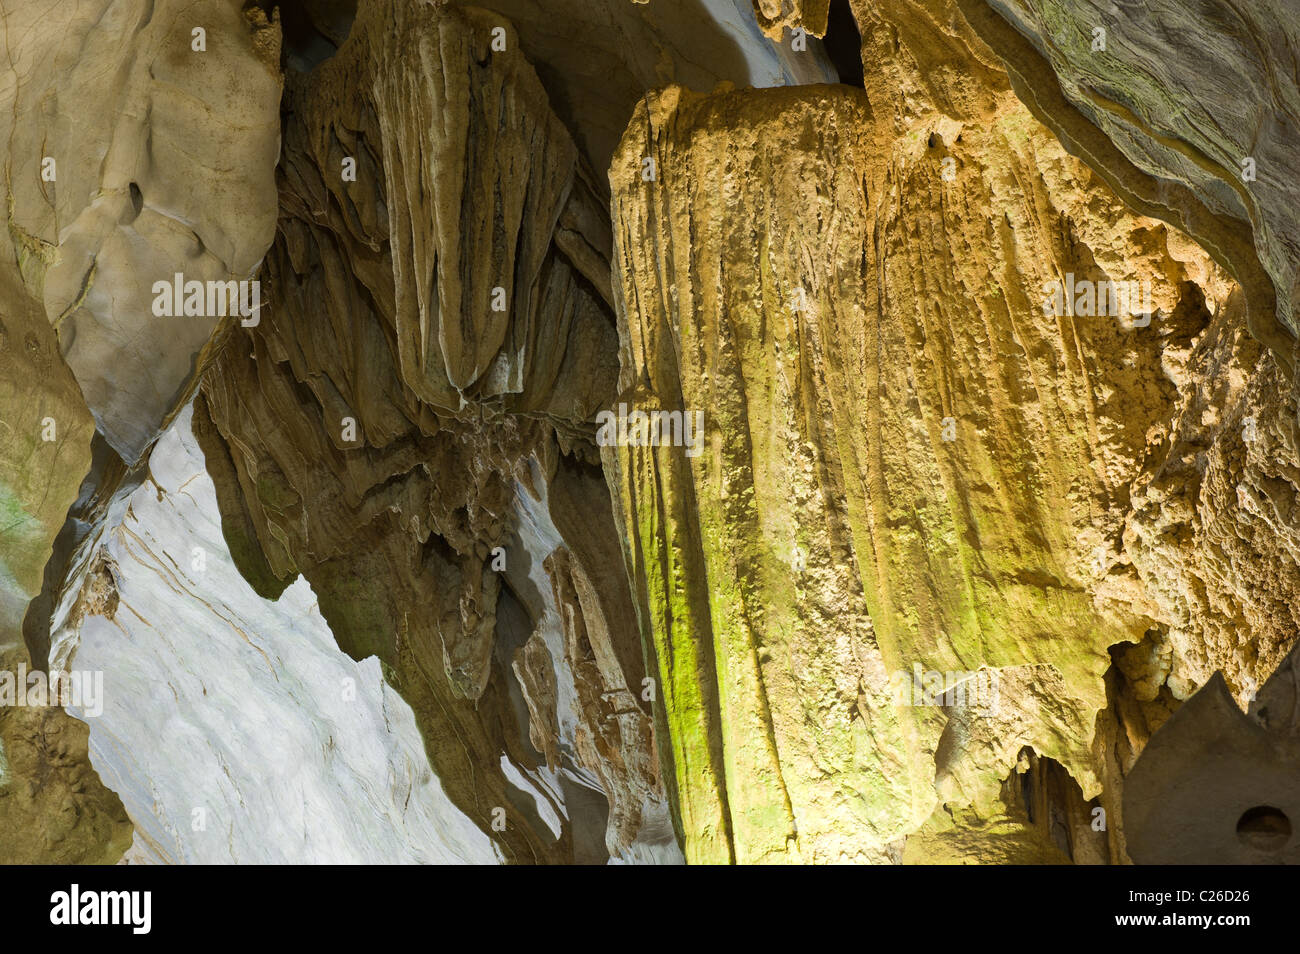 Cueva del Indio, Indian Cave, Vinales, Pinar del Rio Province, Cuba Stock Photo